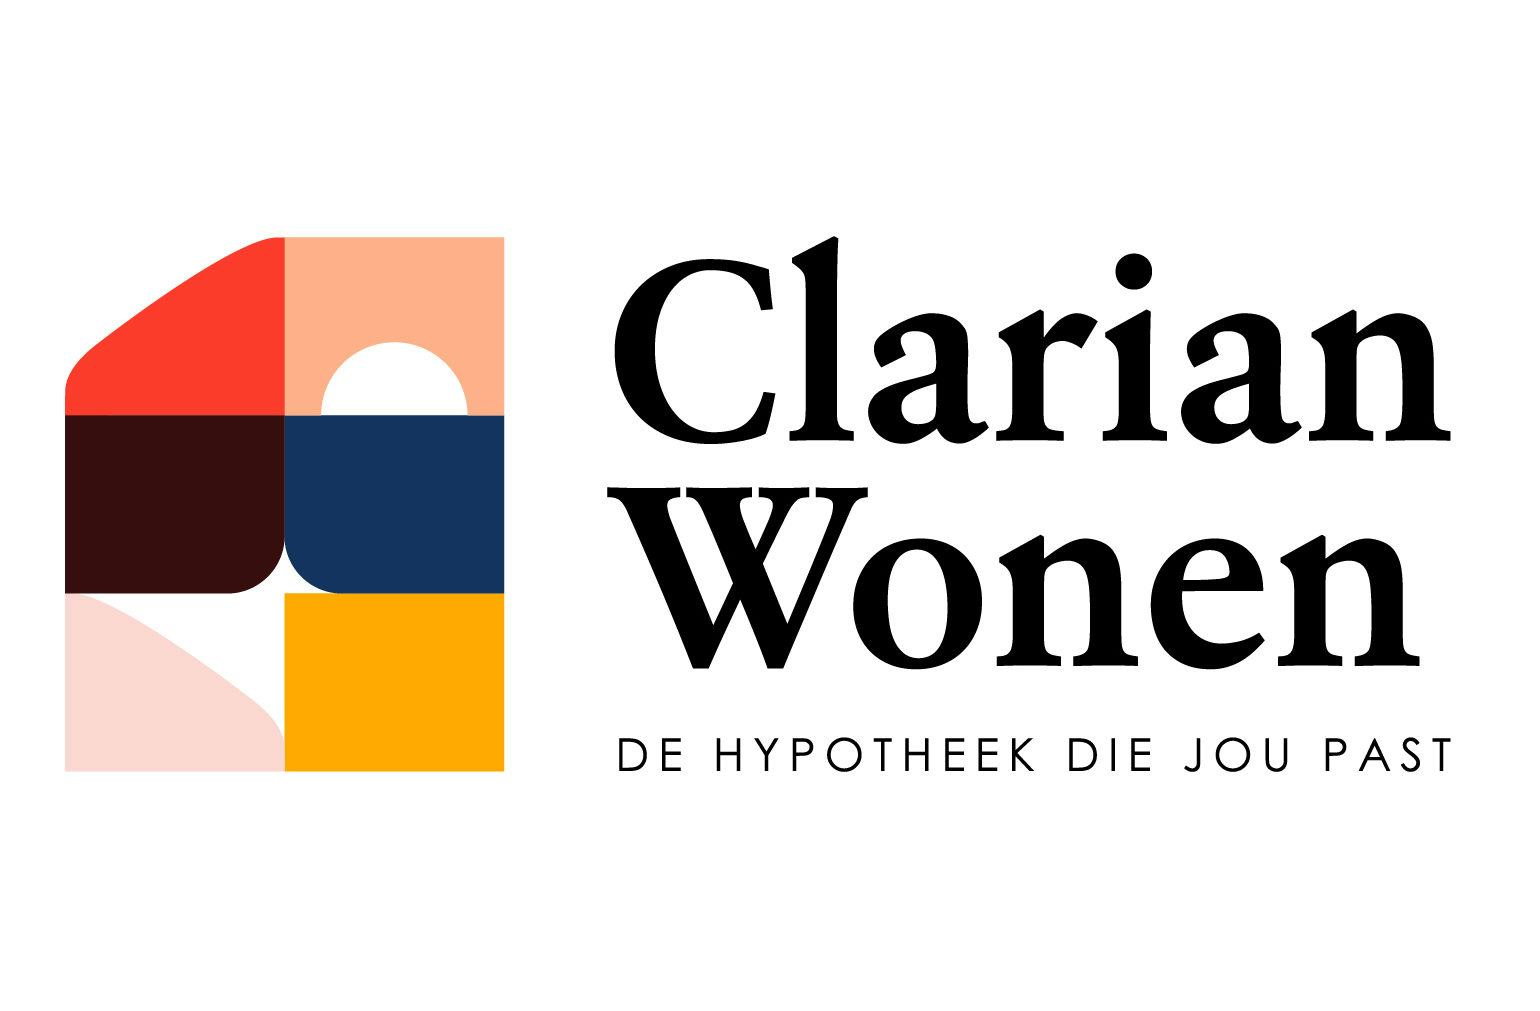 Conneqt voegt met Clarian Wonen vijfde hypotheekmerk toe aan assortiment